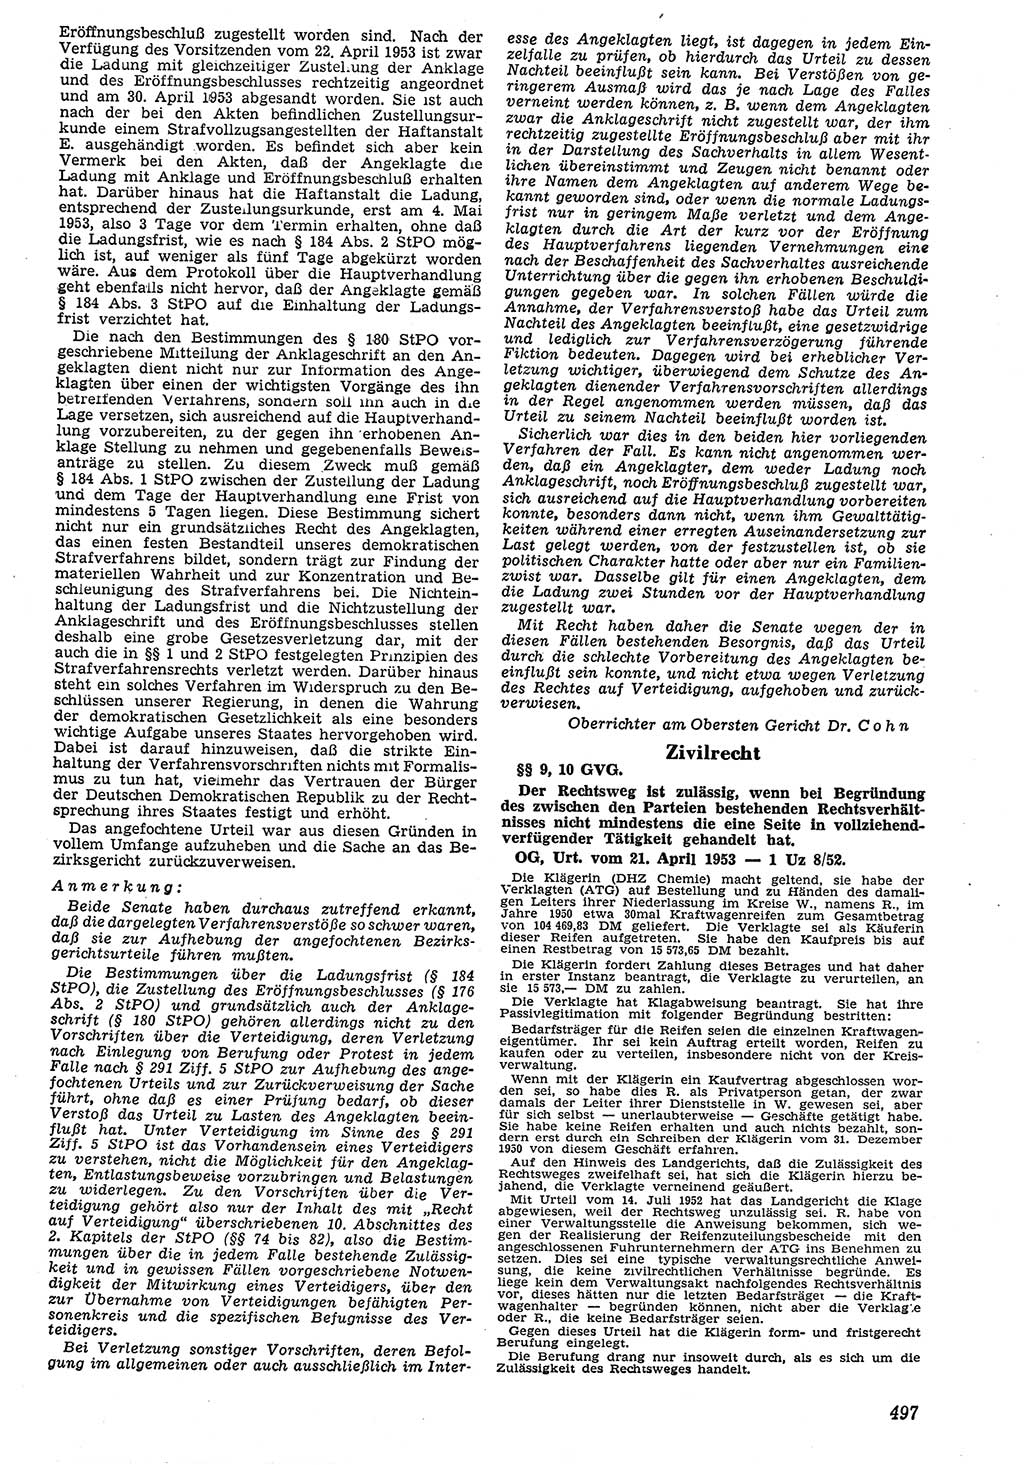 Neue Justiz (NJ), Zeitschrift für Recht und Rechtswissenschaft [Deutsche Demokratische Republik (DDR)], 7. Jahrgang 1953, Seite 497 (NJ DDR 1953, S. 497)